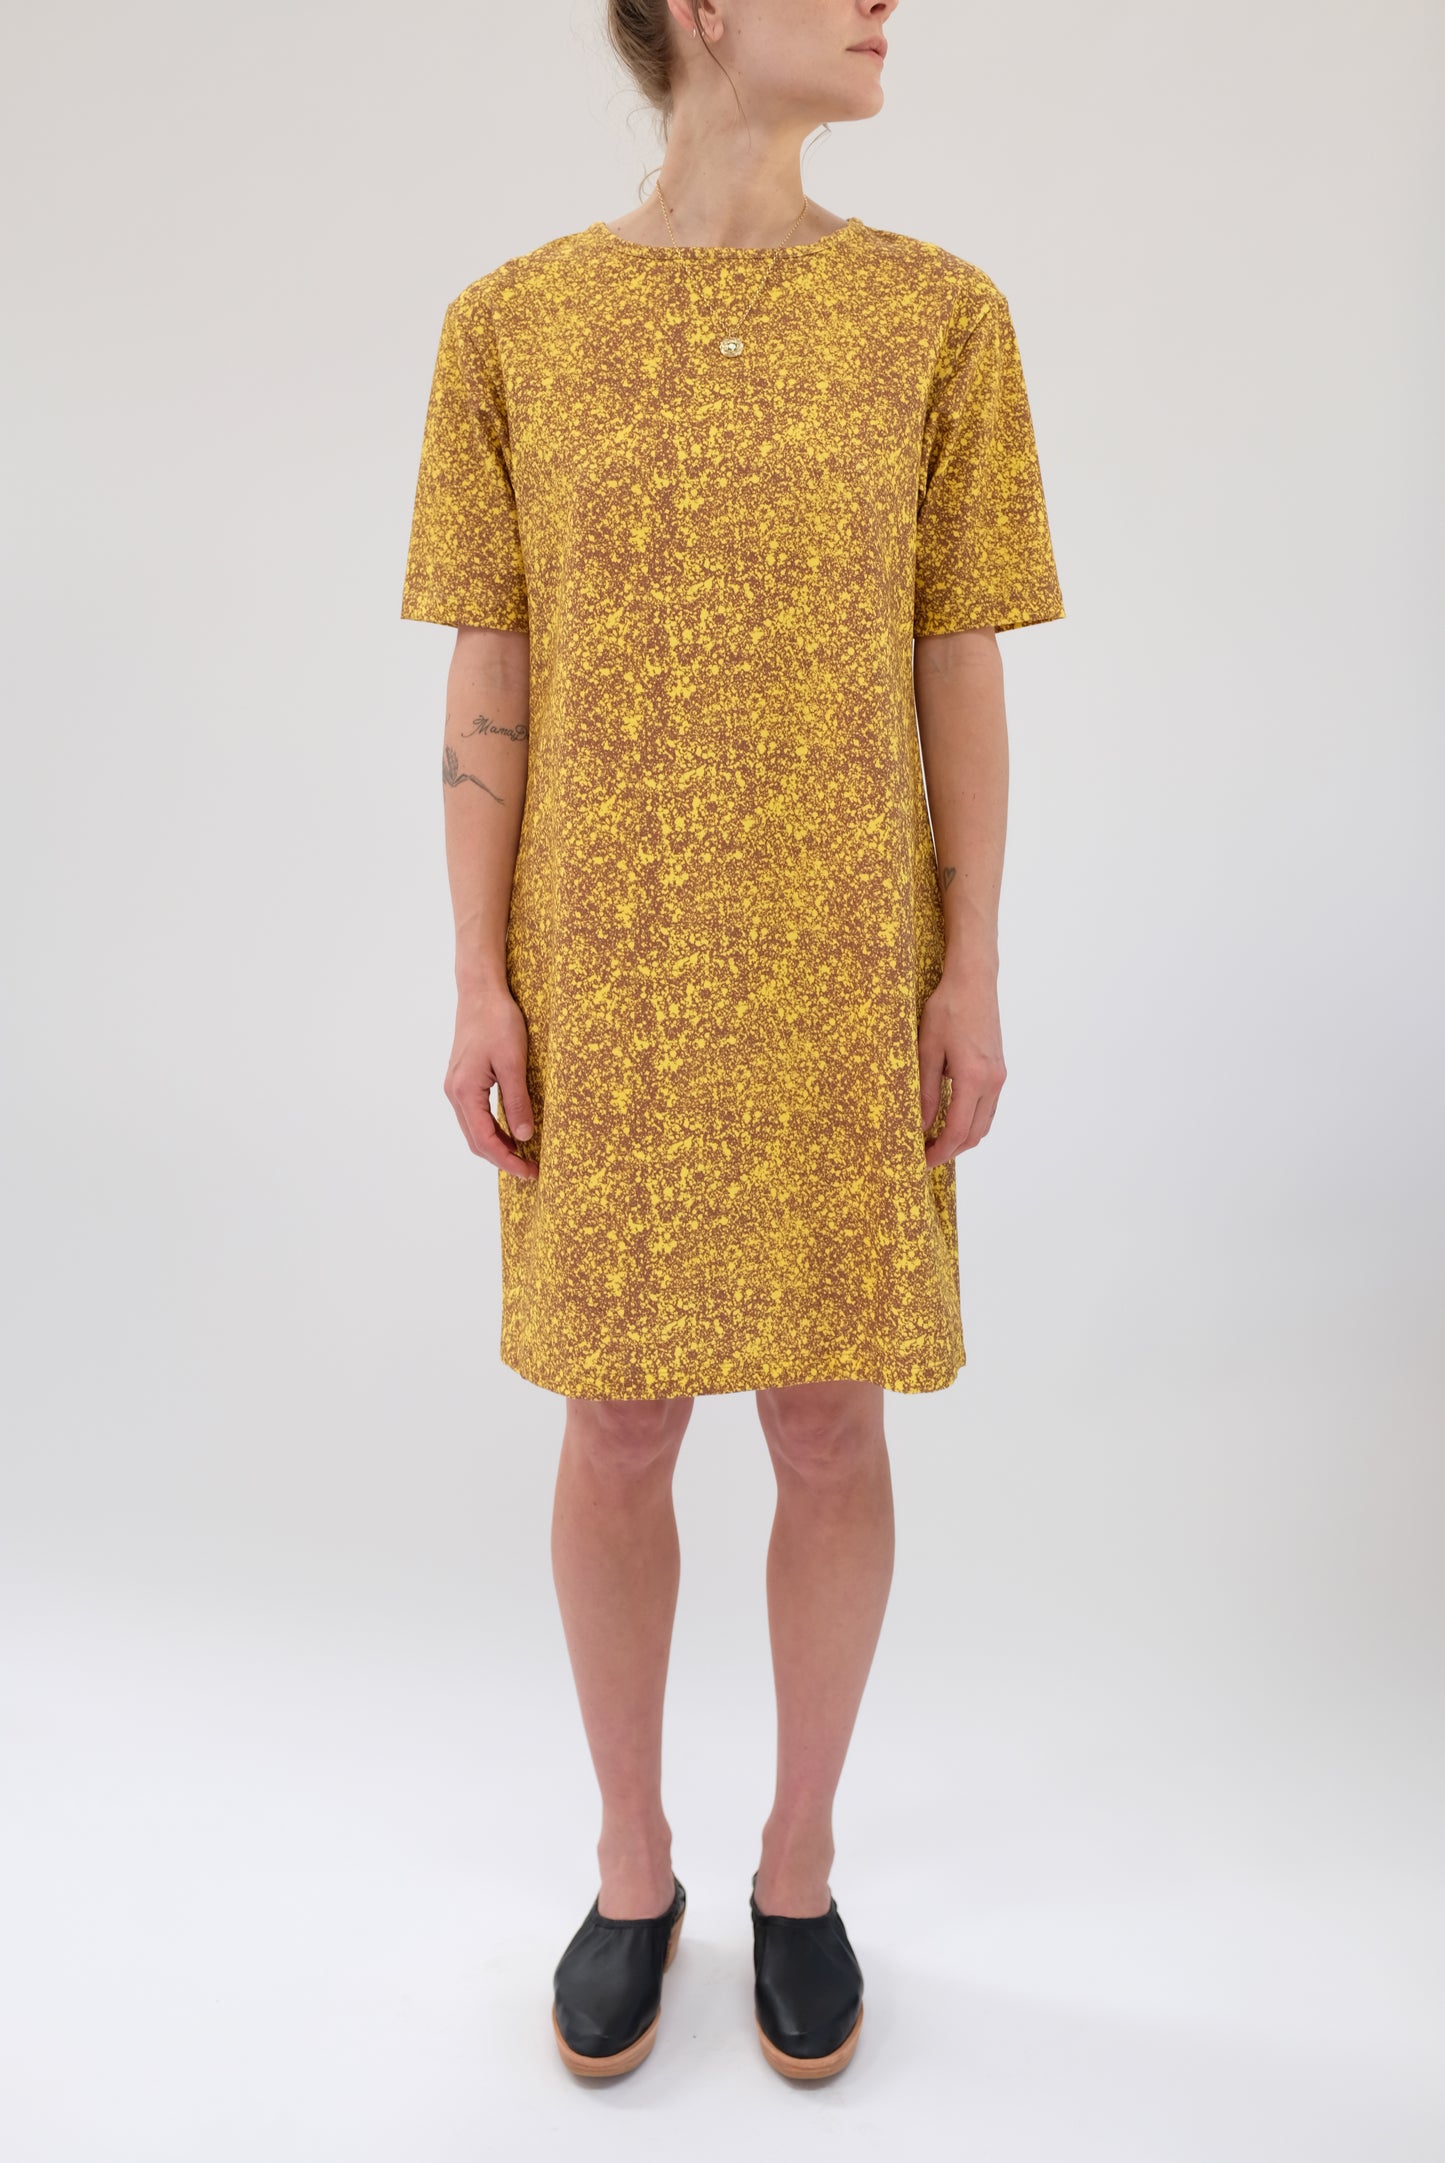 Beklina T Shirt Dress Splatter Lemon